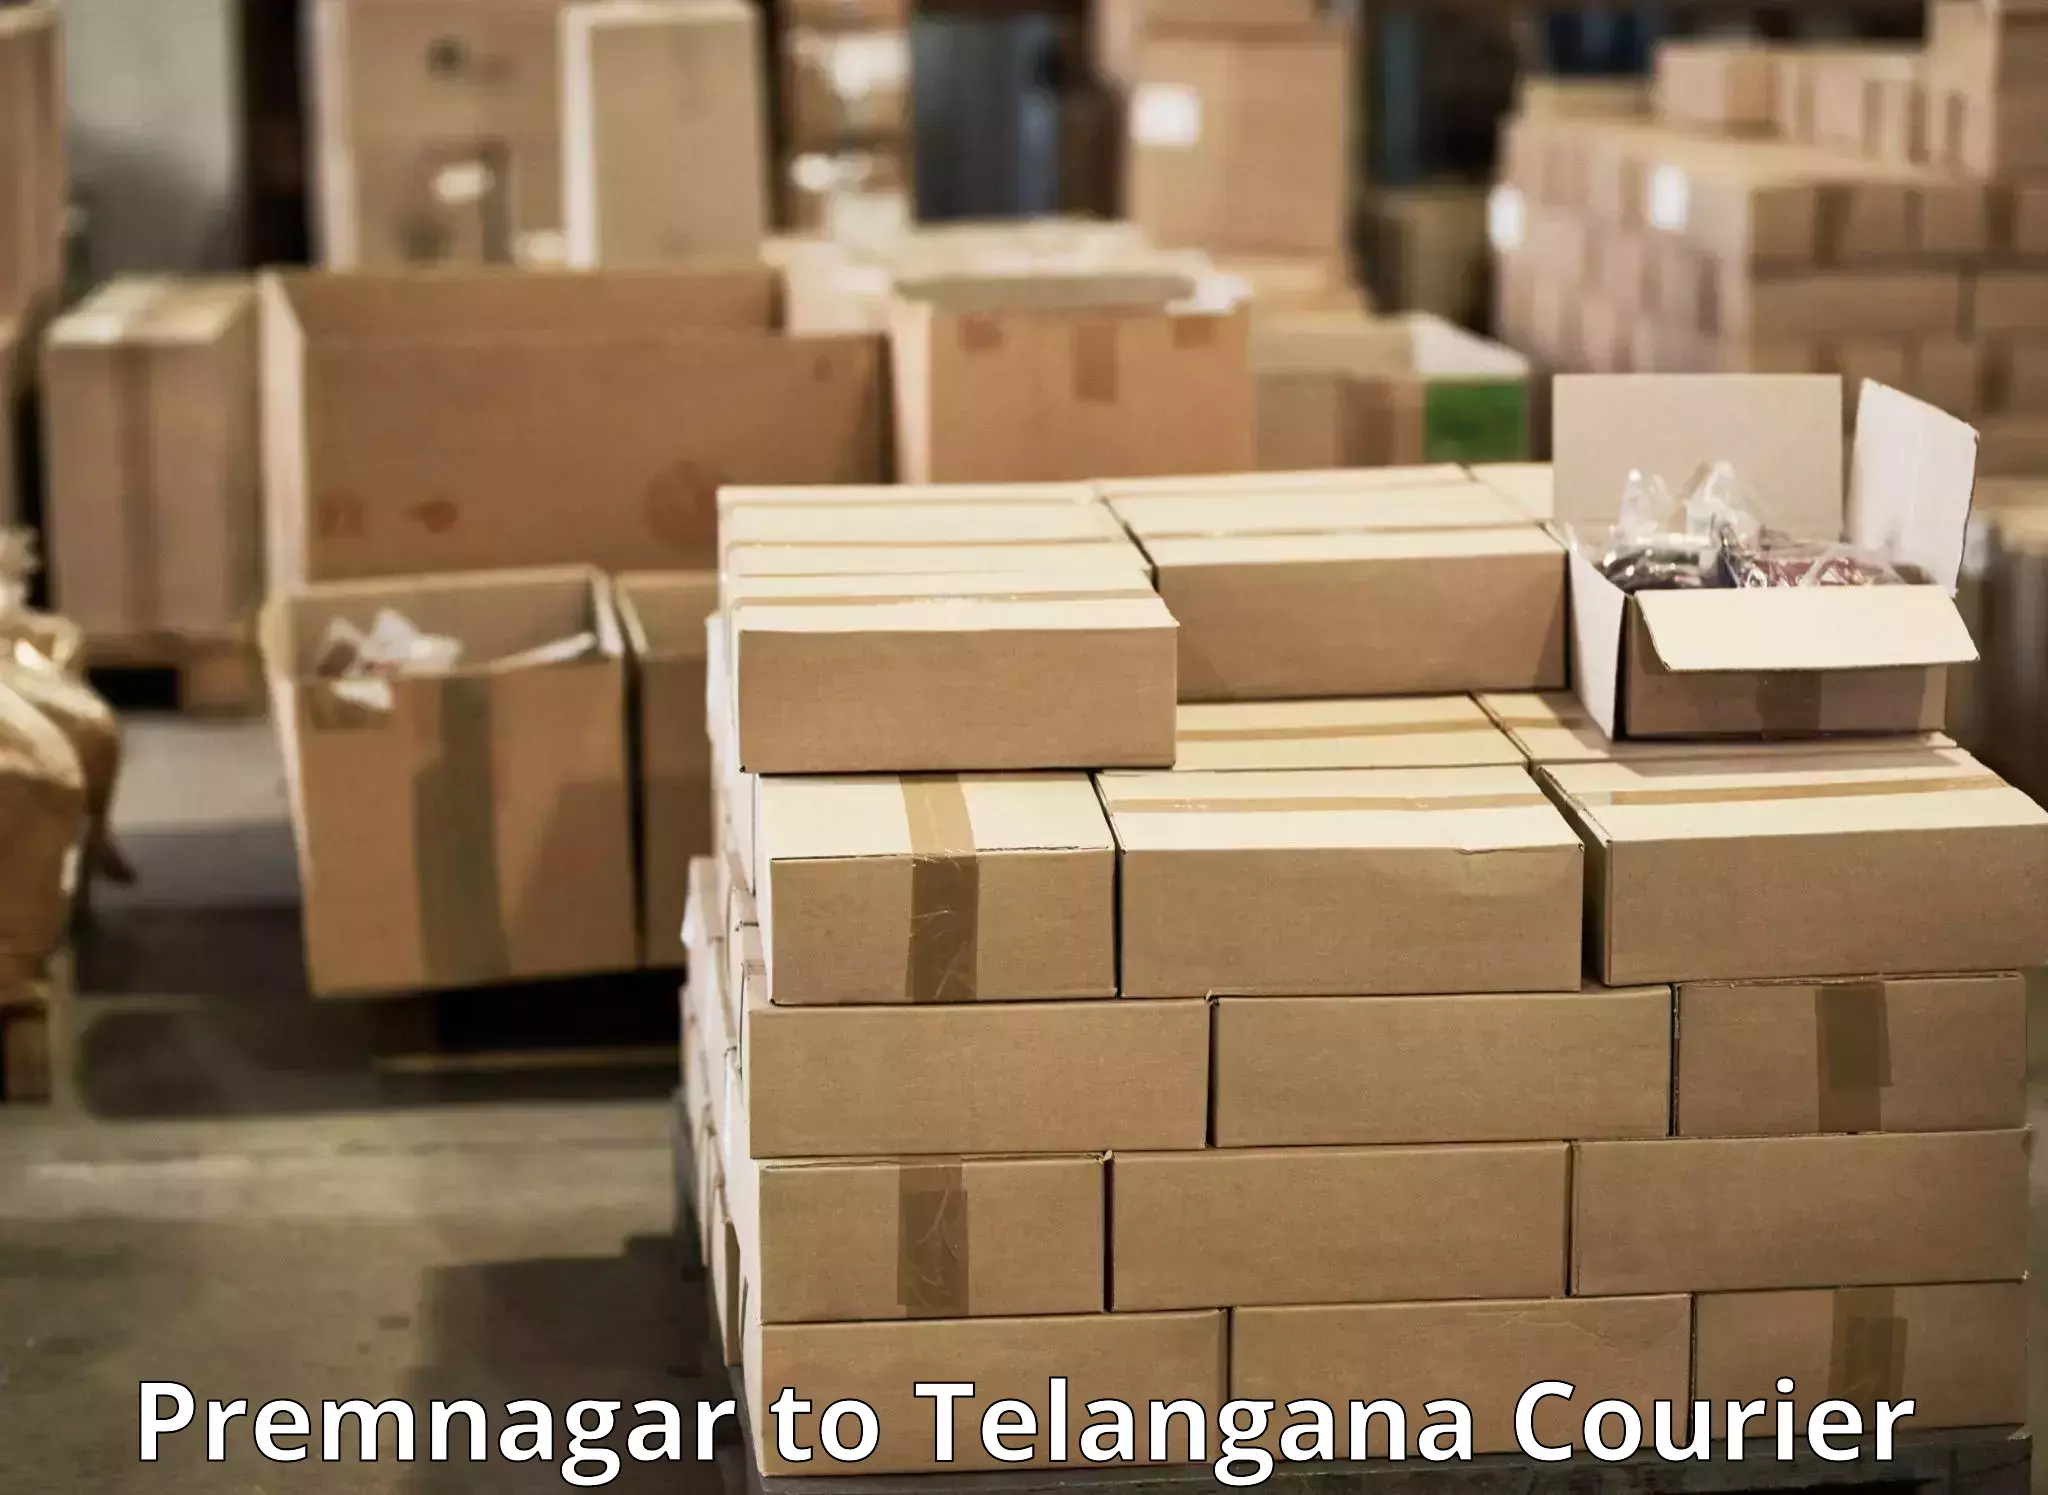 Expedited parcel delivery in Premnagar to Devarakonda